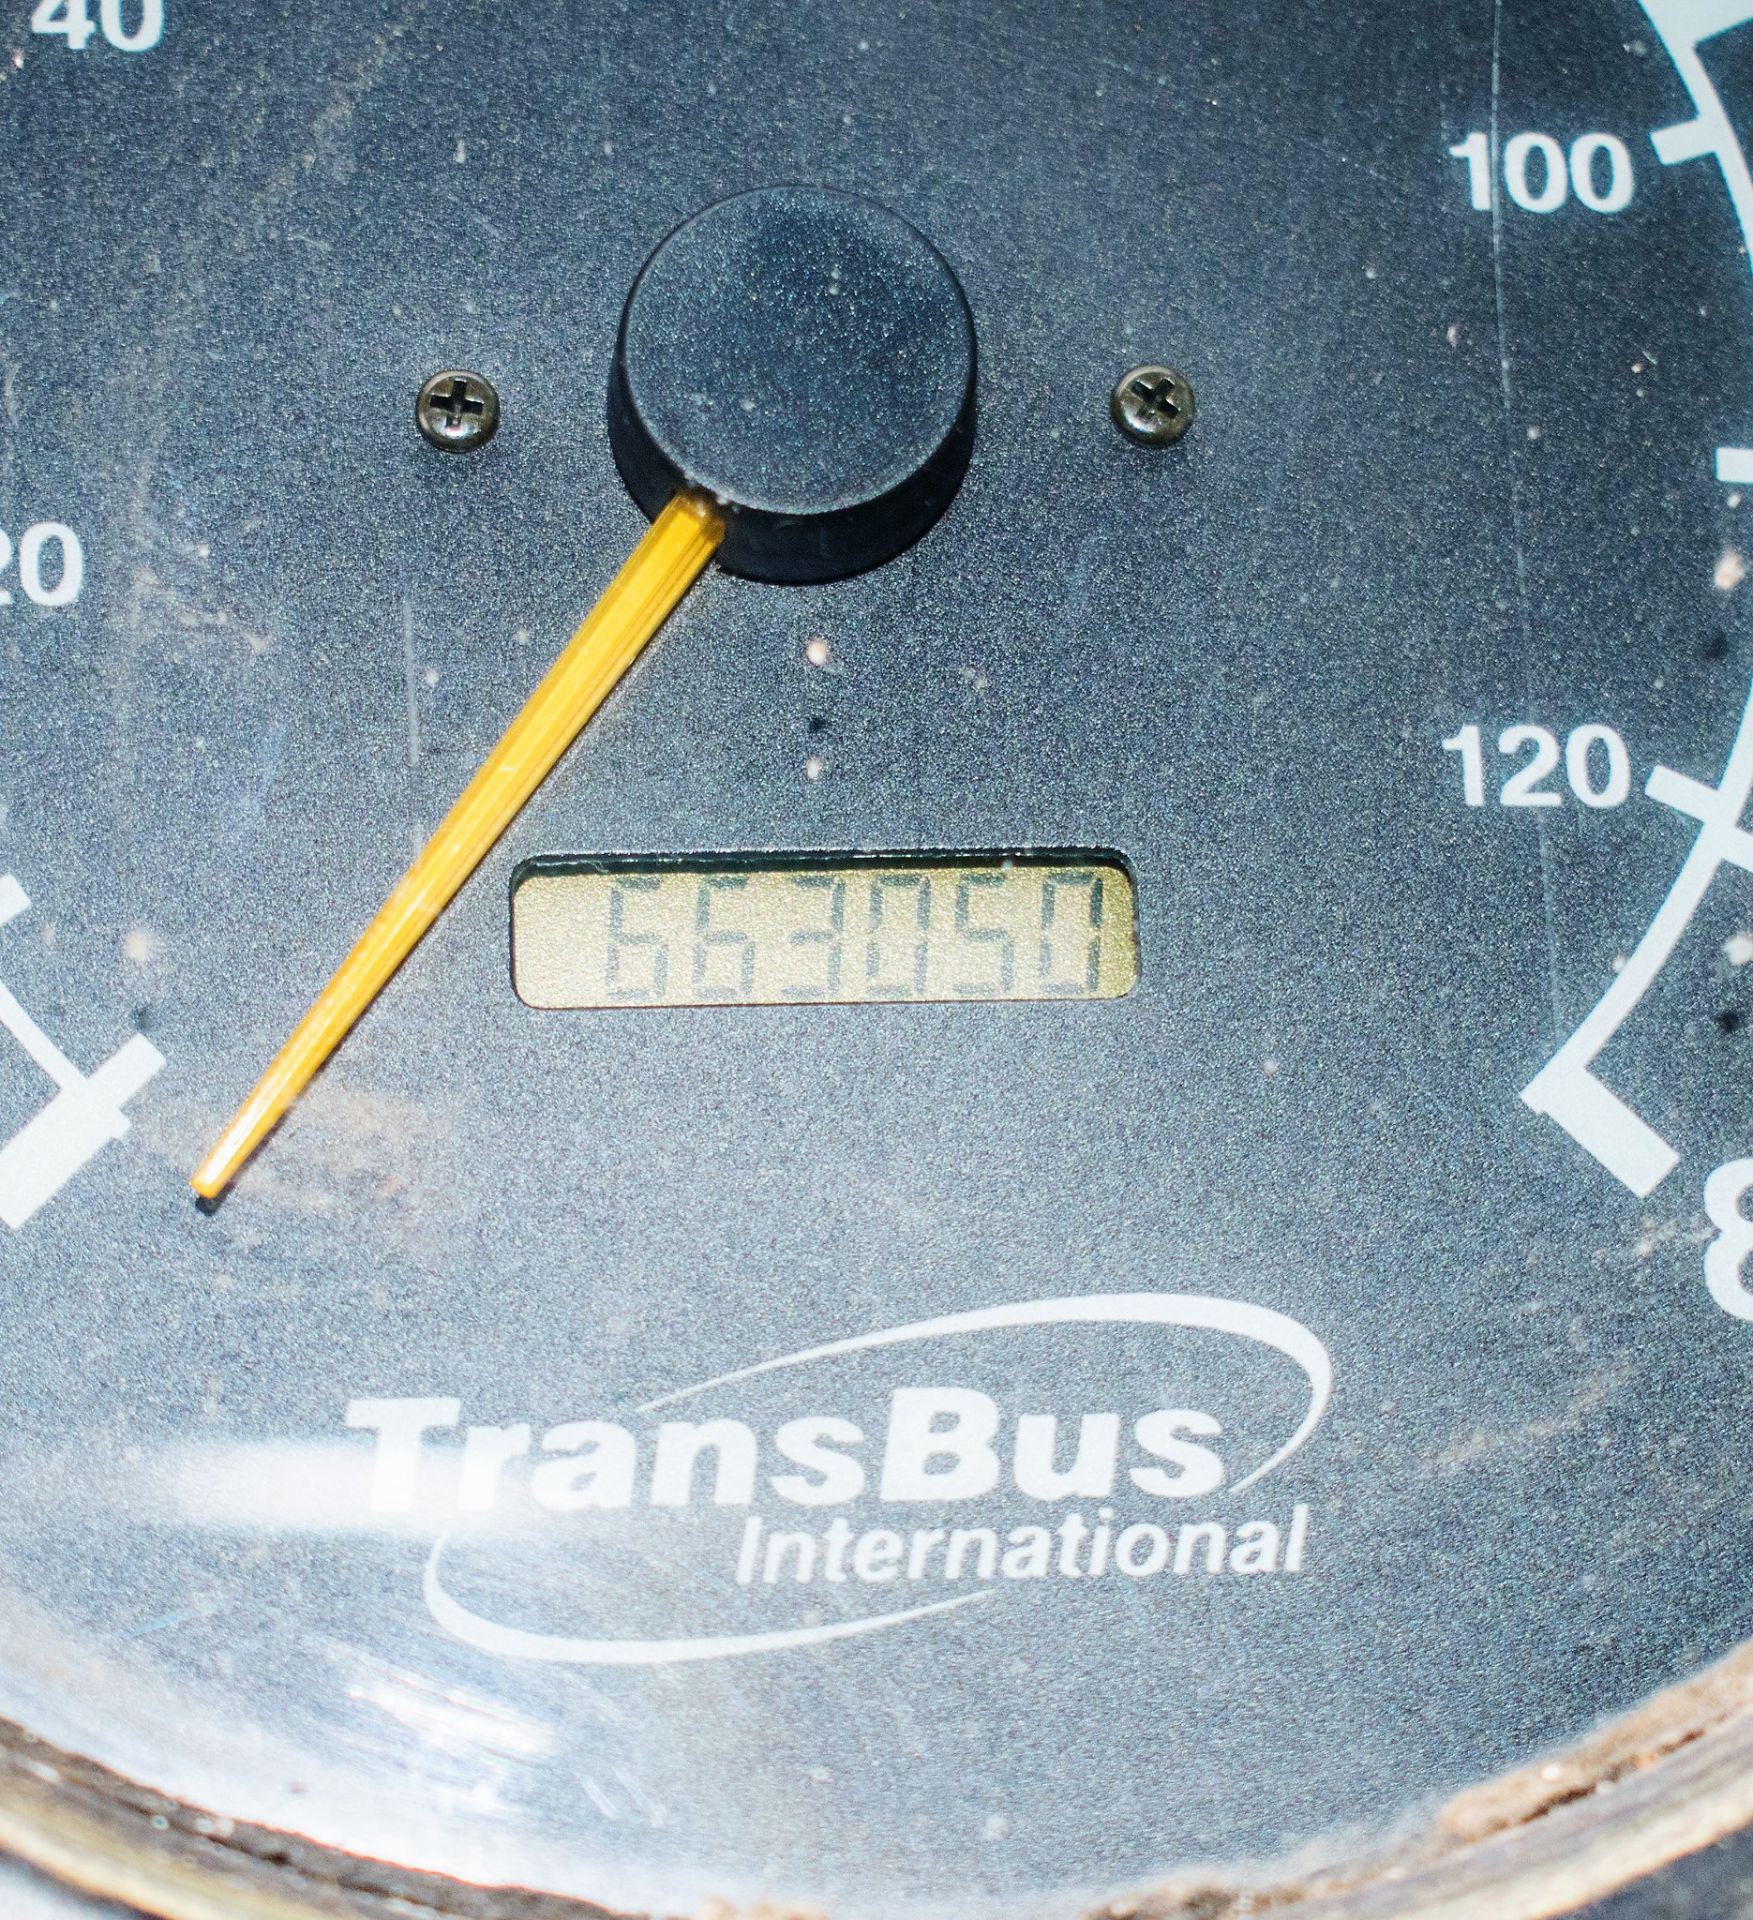 Dennis Super Dart 43 seat single deck service bus Registration Number: PG03 YYZ Date of - Image 14 of 14